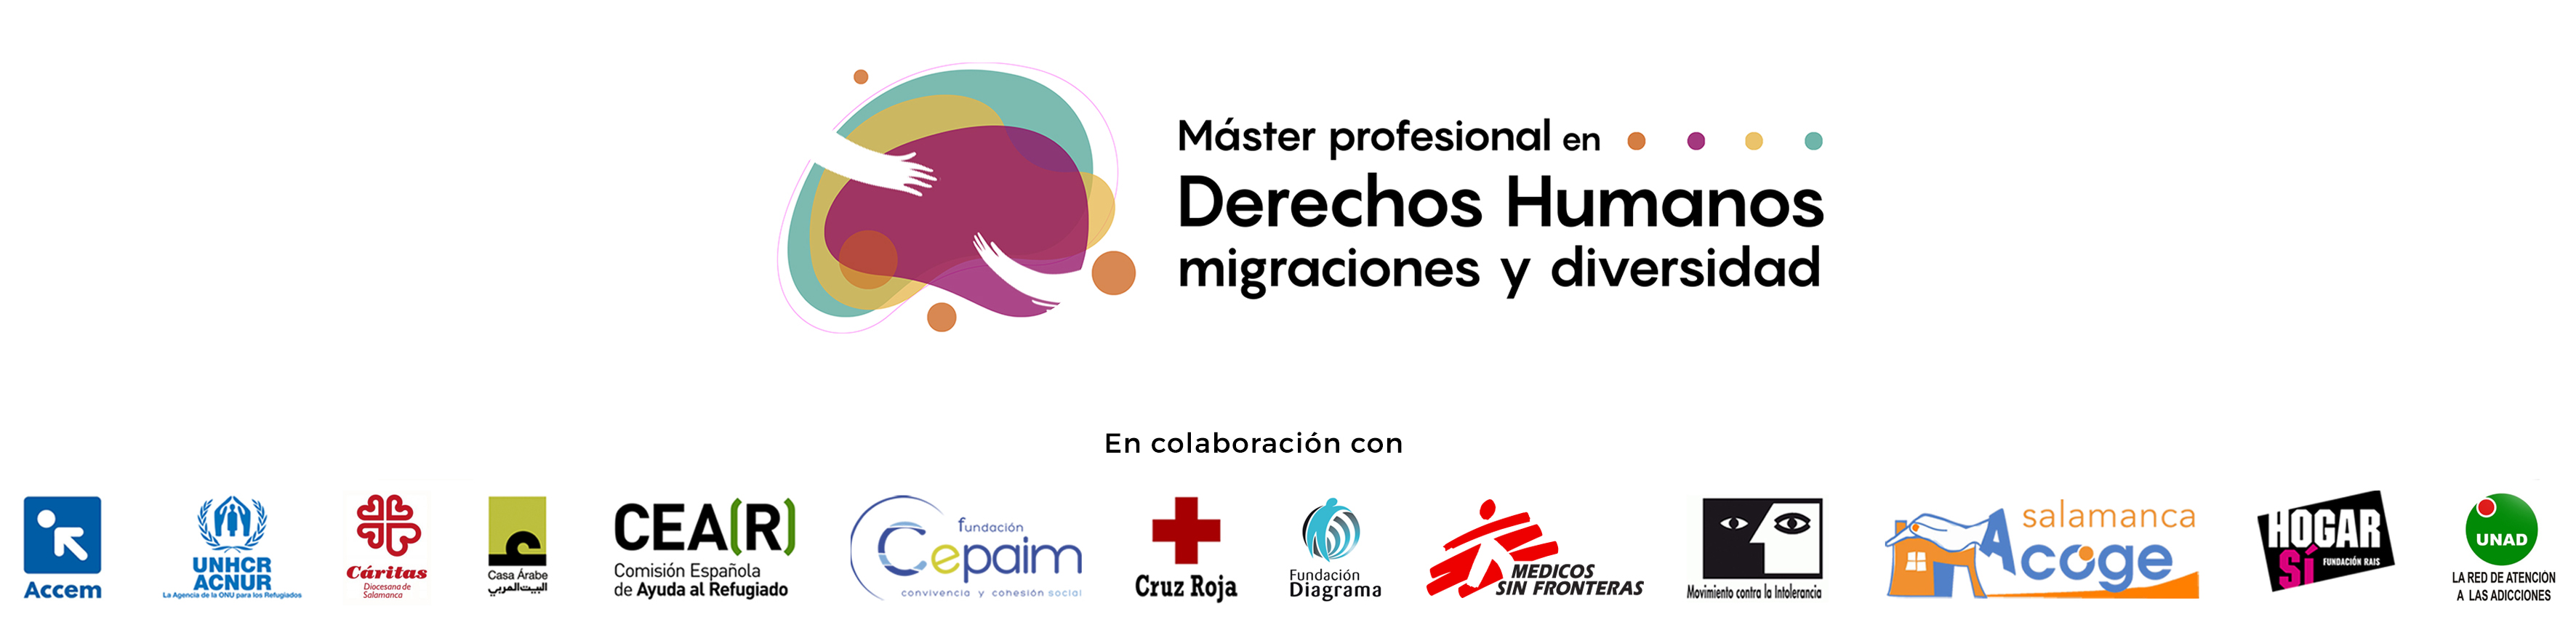 Master profesional en Derechos Humanos, migraciones y diversidad